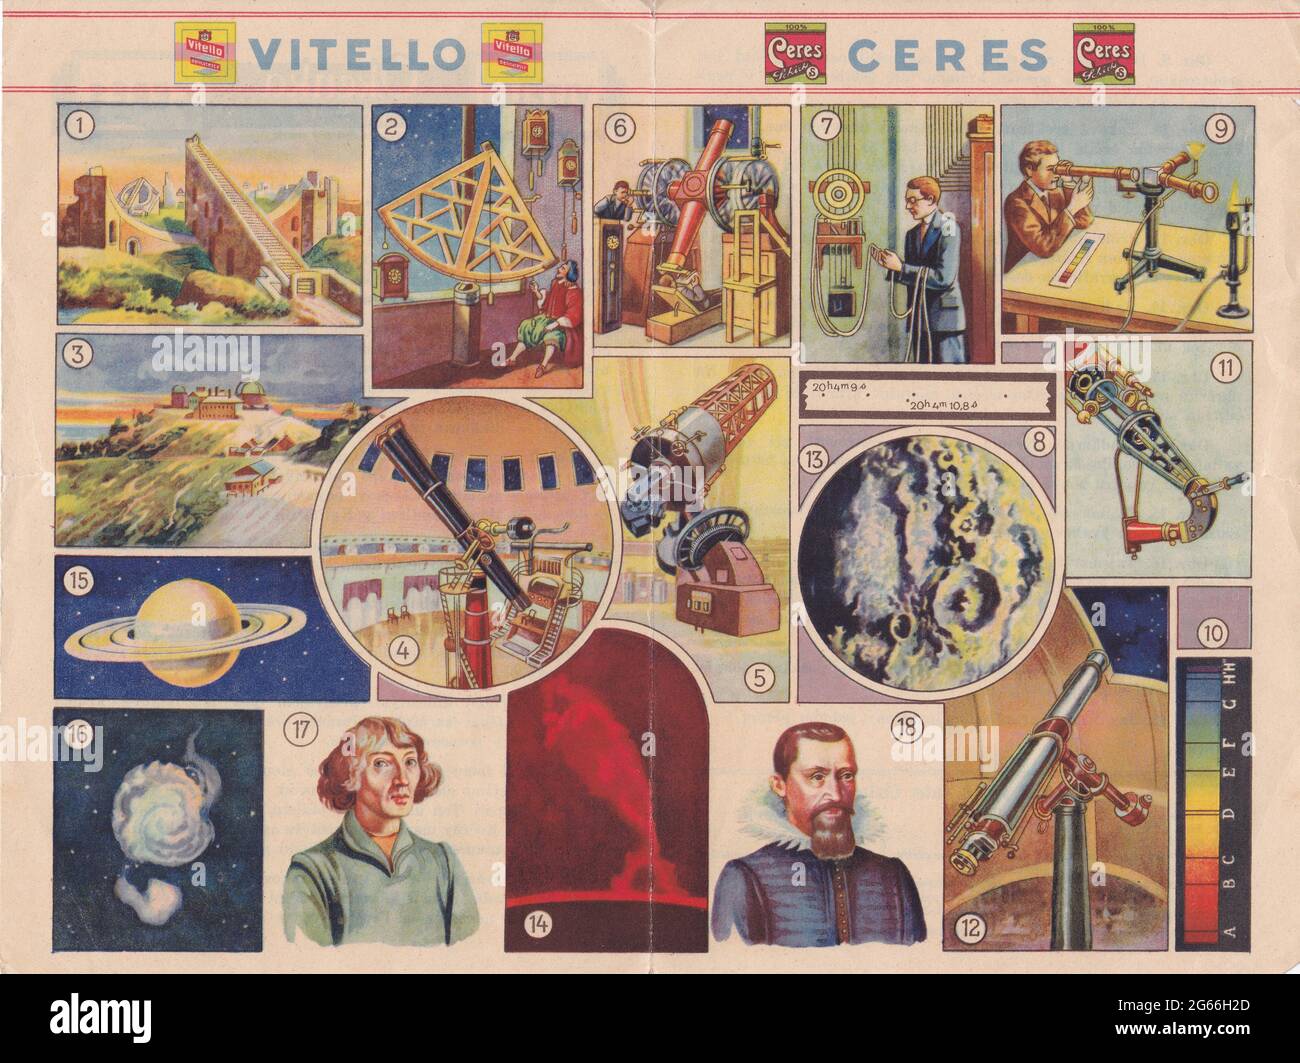 Vintage Vitello Ceres Okenka do sveta Cis 23. Astronom - Story book of astronomer / astronomy 1930s. Stock Photo